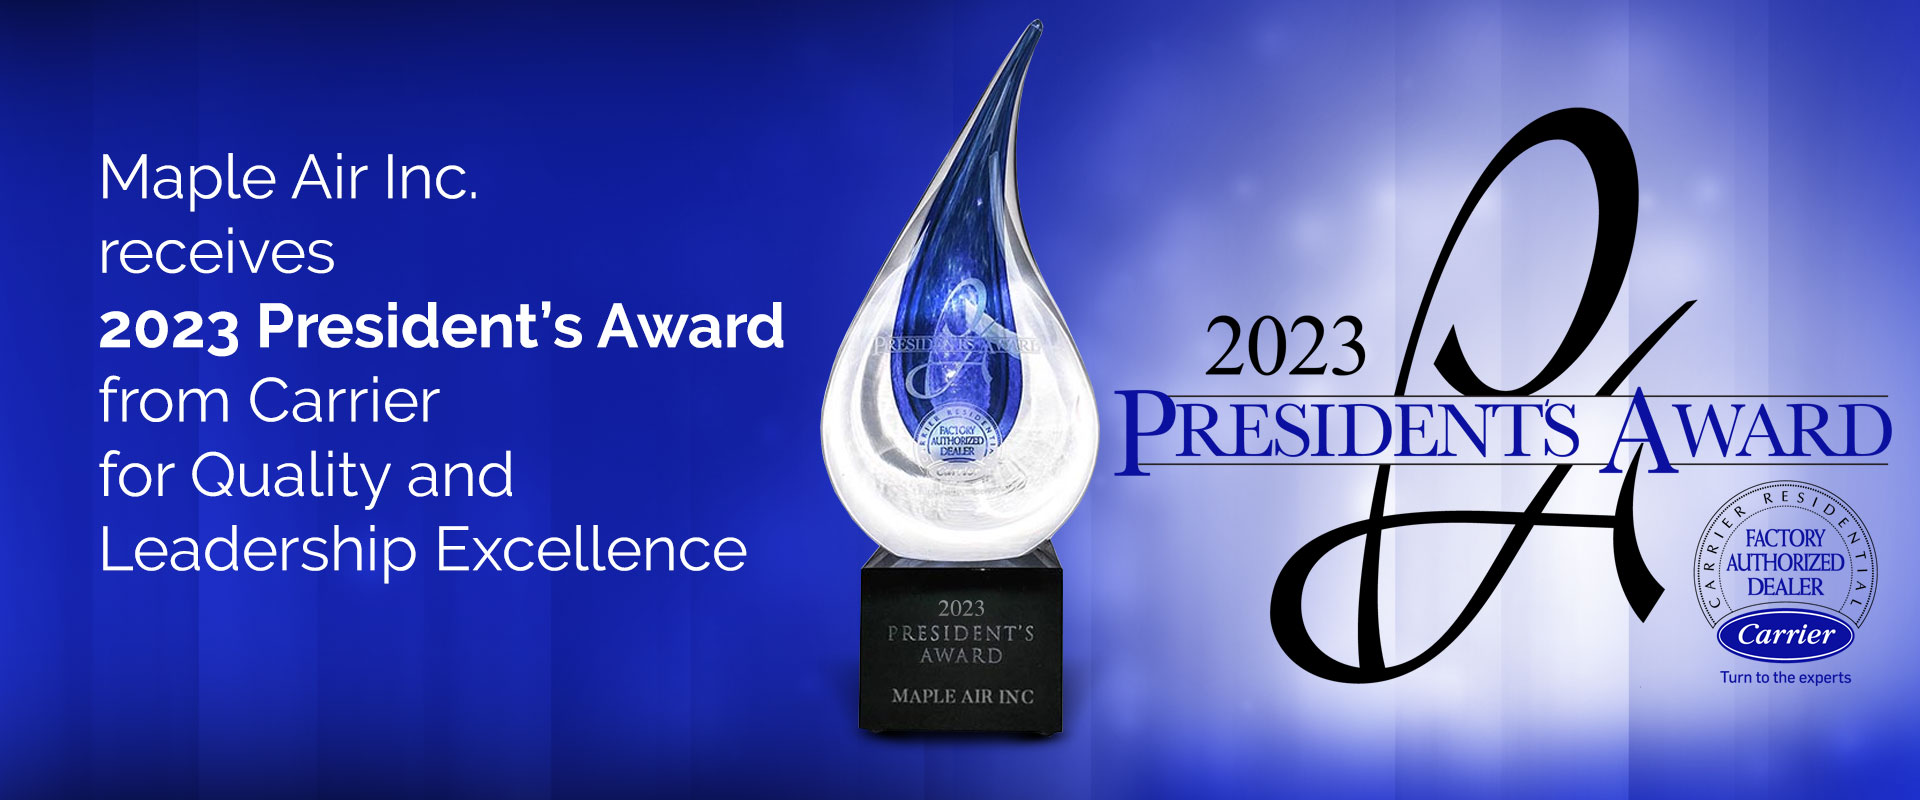 Carrier President's Award 2023 winner